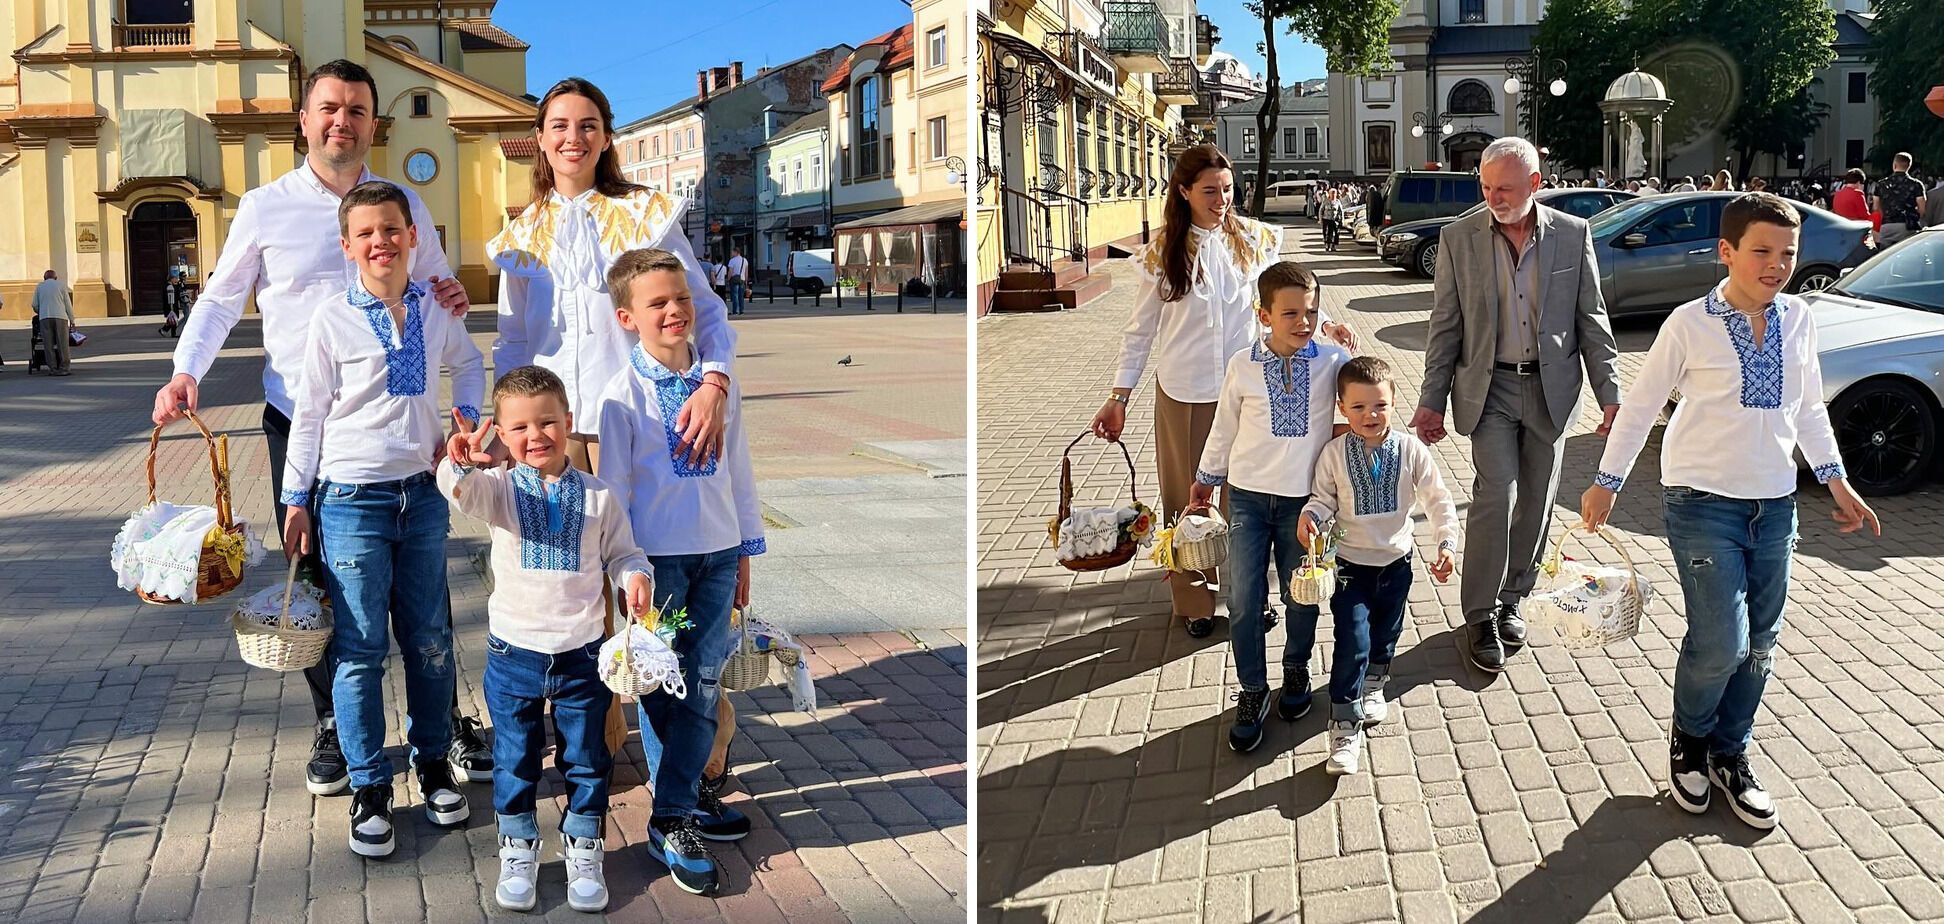 ''To święto zwycięstwa''. Ukraińskie gwiazdy pokazały swoje wielkanocne stylizacje: większość w haftowanych koszulach